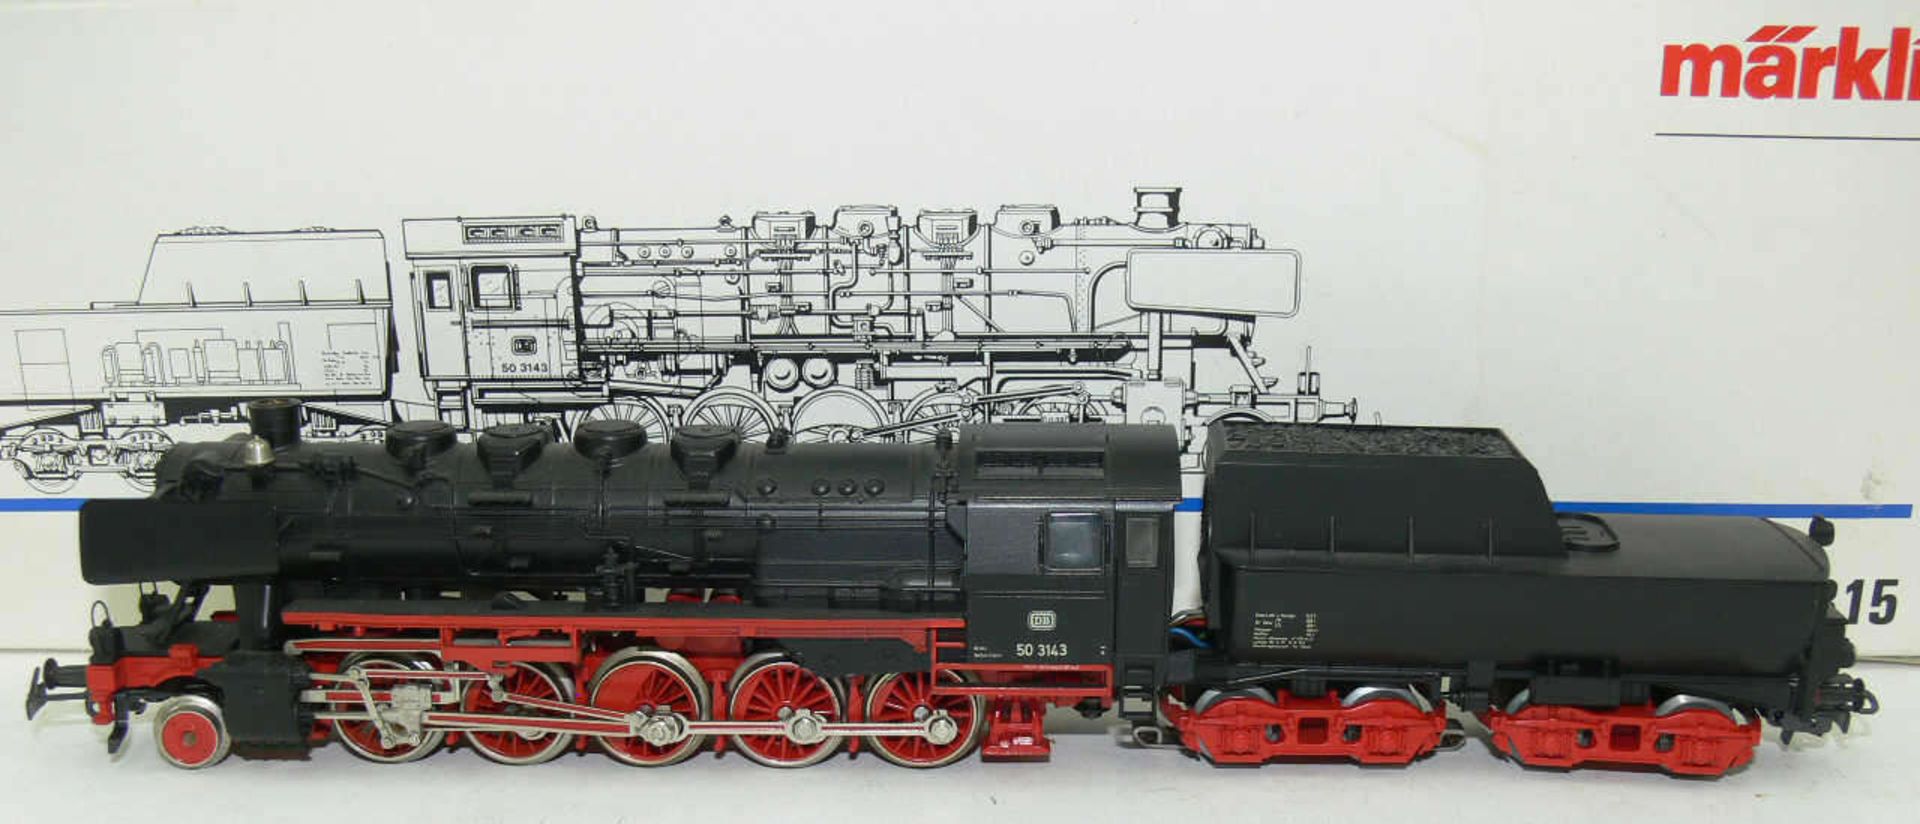 Märklin H0 3315, Dampflokomotive mit Schlepptender BR 50 der DB. BN 50 3143. Leichte Laufspuren.